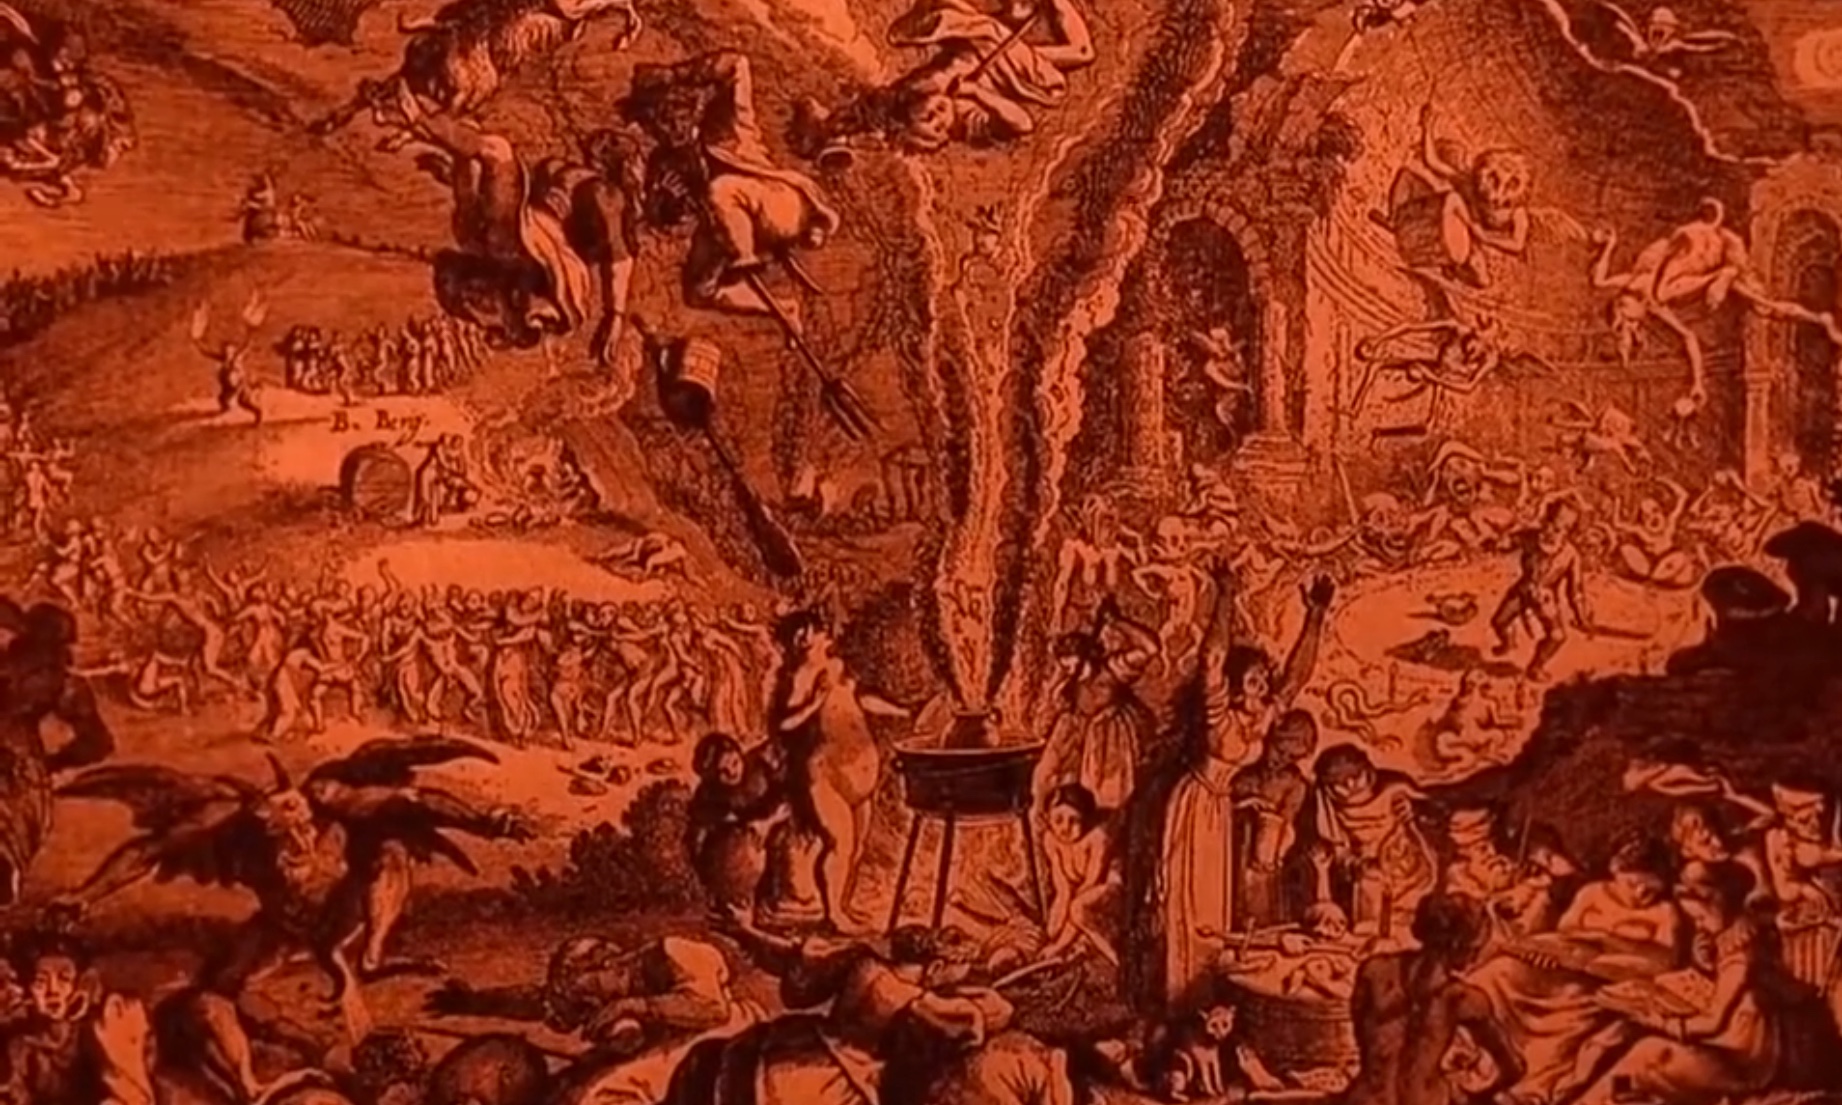 Cena do filme Häxan - A Feitiçaria Através dos Tempos apresenta uma imagem com tons avermelhados que ilustra bruxas e demônios reunidos.